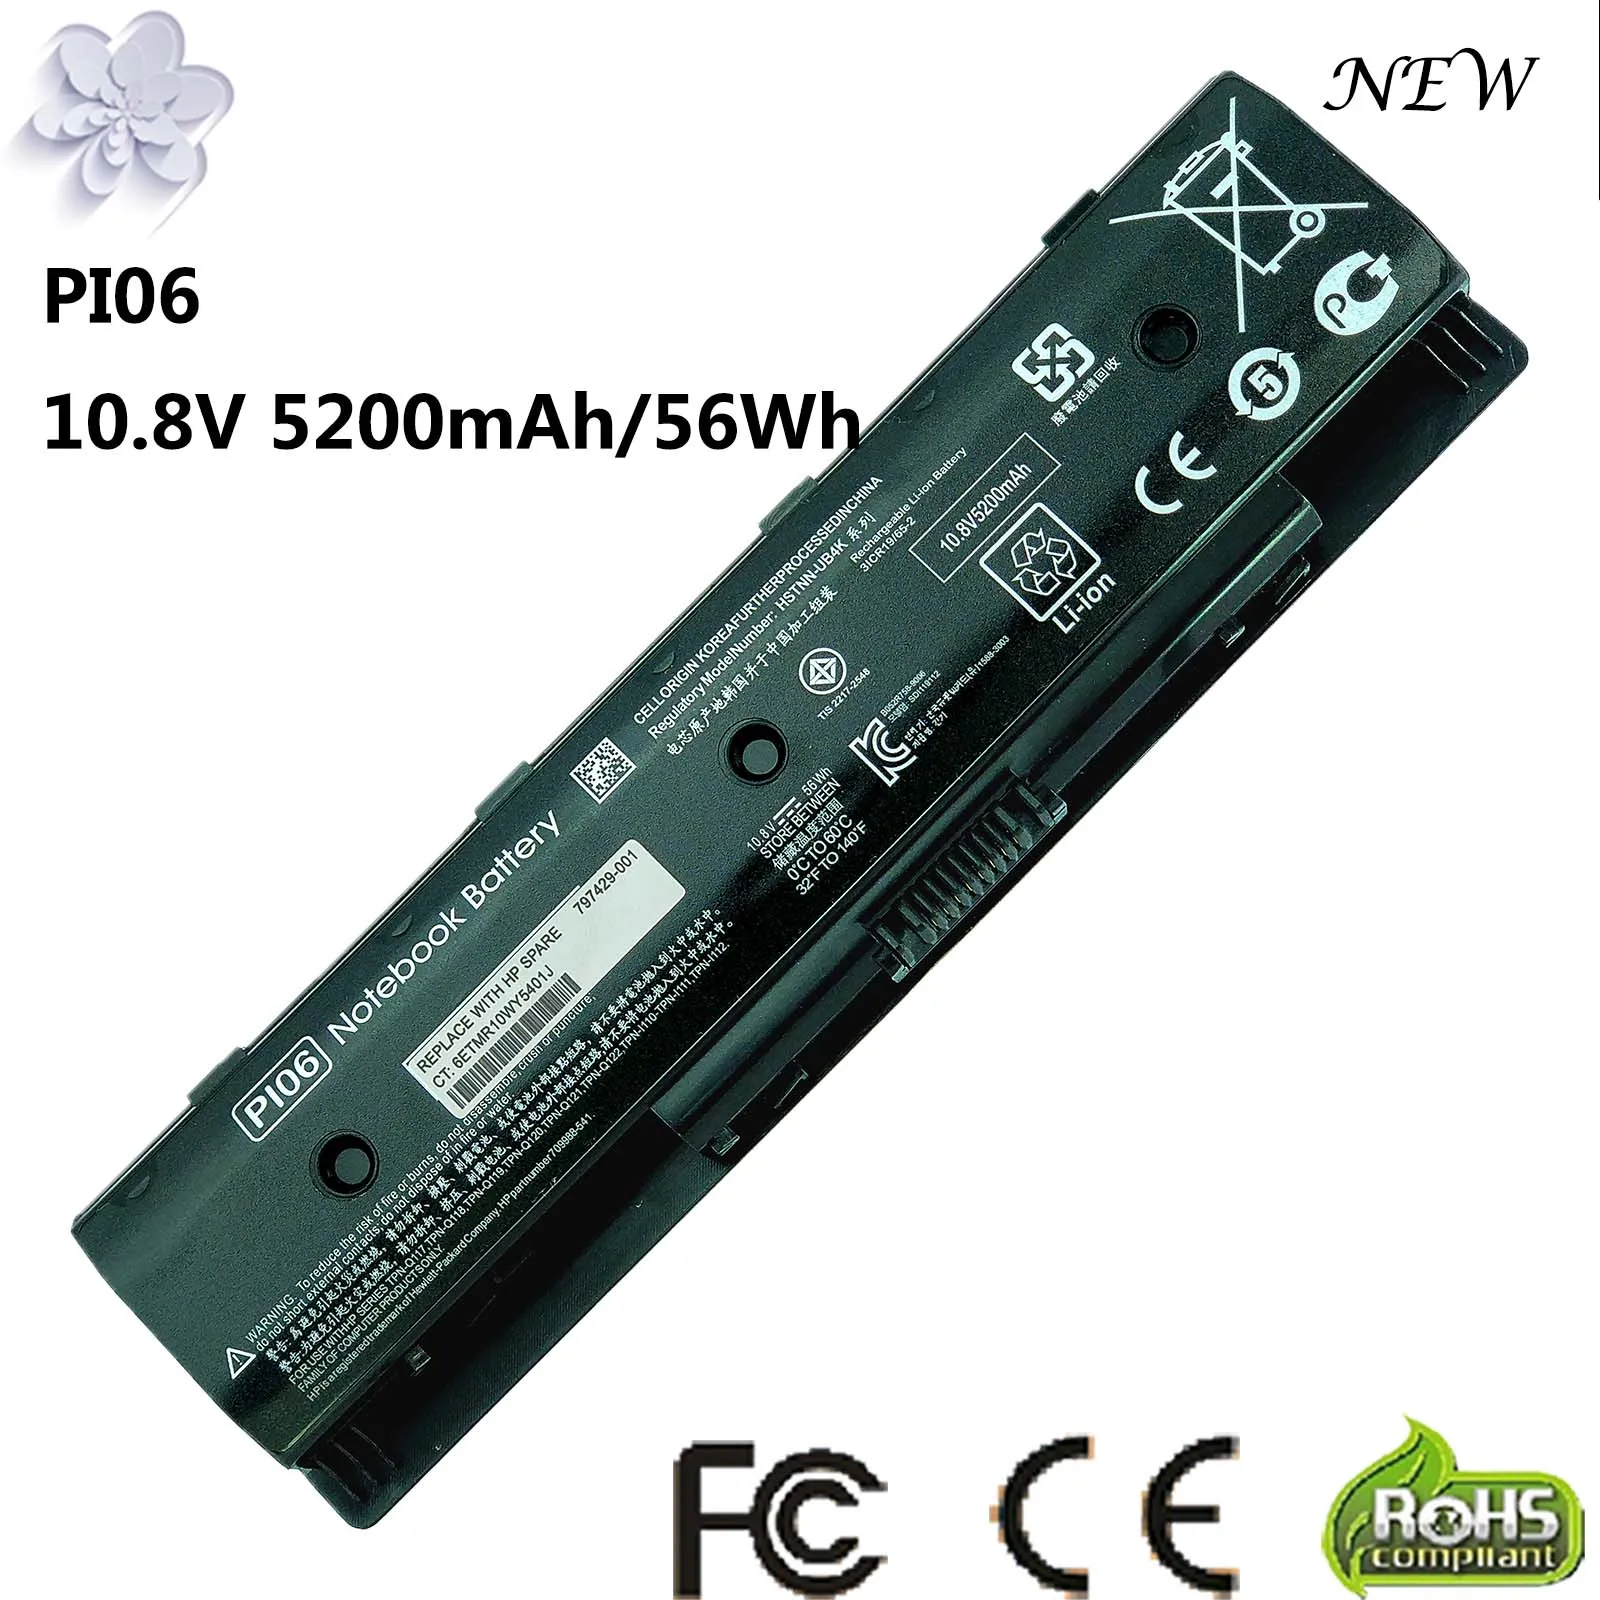 

Battery for HP PI06 PI09 710416-001 710417-001 Envy 15 15T 17 Pavilion 14-E000 15-E000 15t-e000 15z-e000 17-E000 17-E100